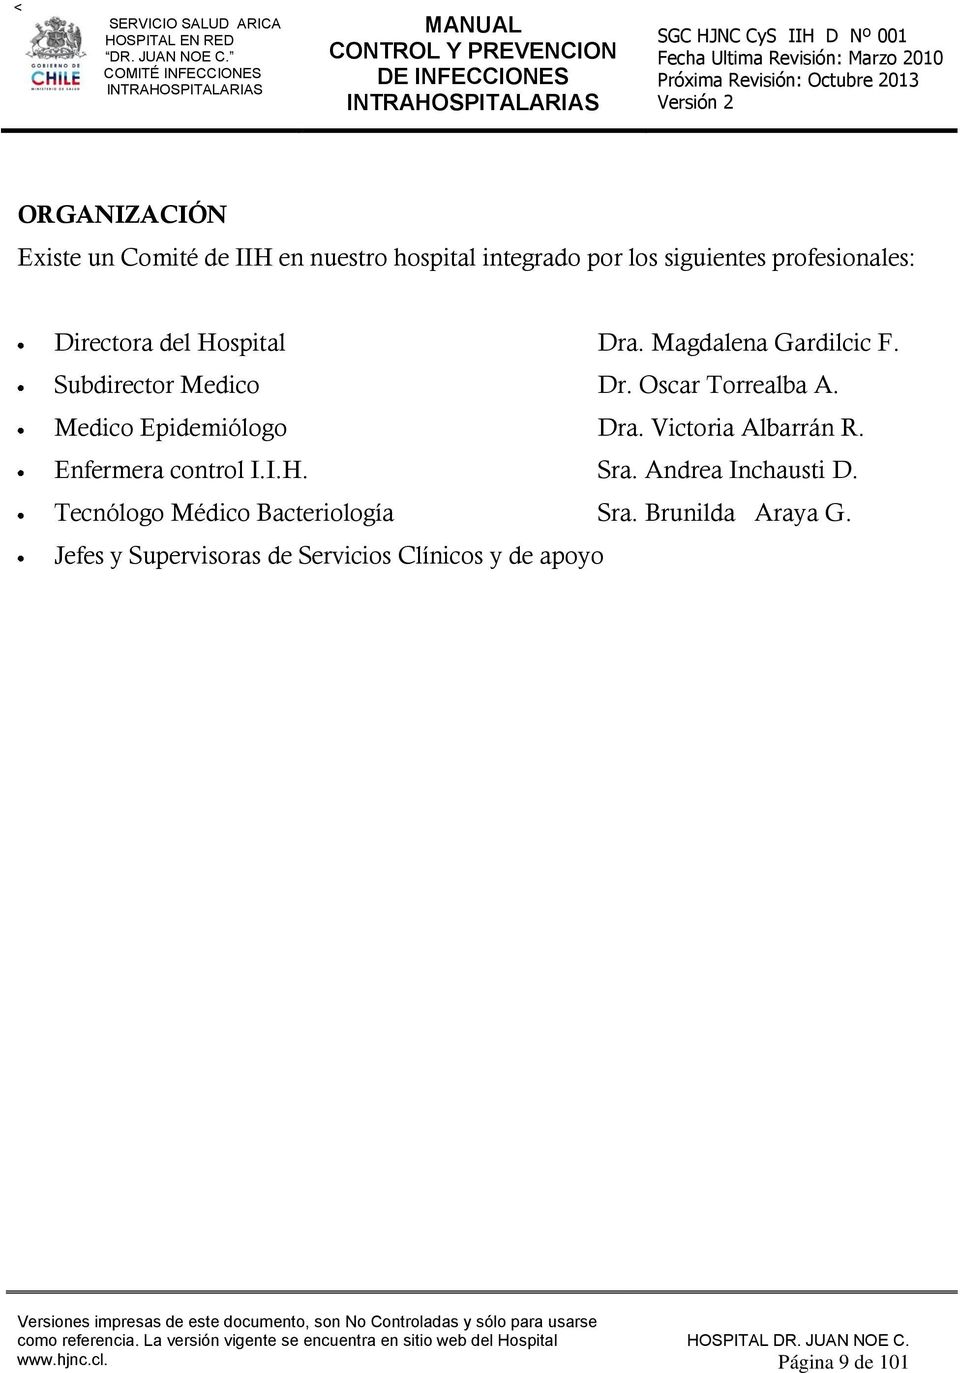 Medico Epidemiólogo Dra. Victoria Albarrán R. Enfermera control I.I.H. Sra. Andrea Inchausti D.